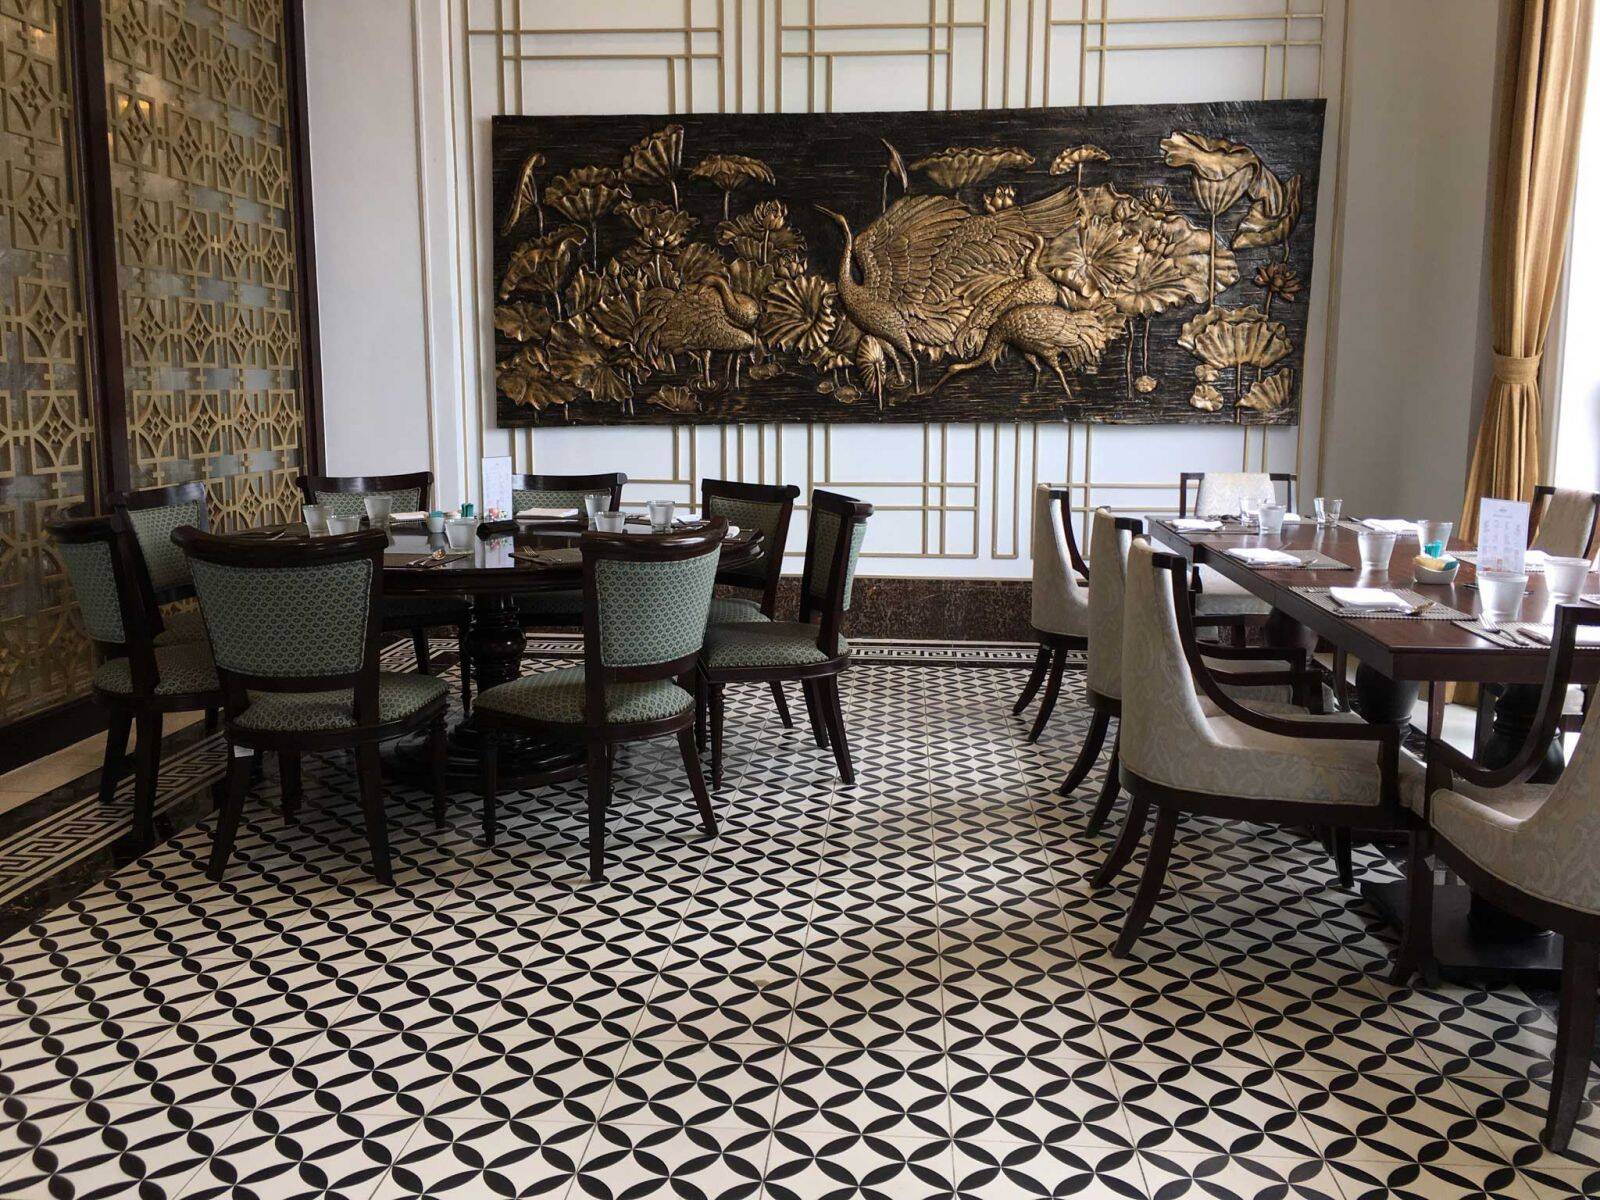 Gạch bông với phong cách cổ điển khi được ứng dụng trong thiết kế không gian nhà hàng